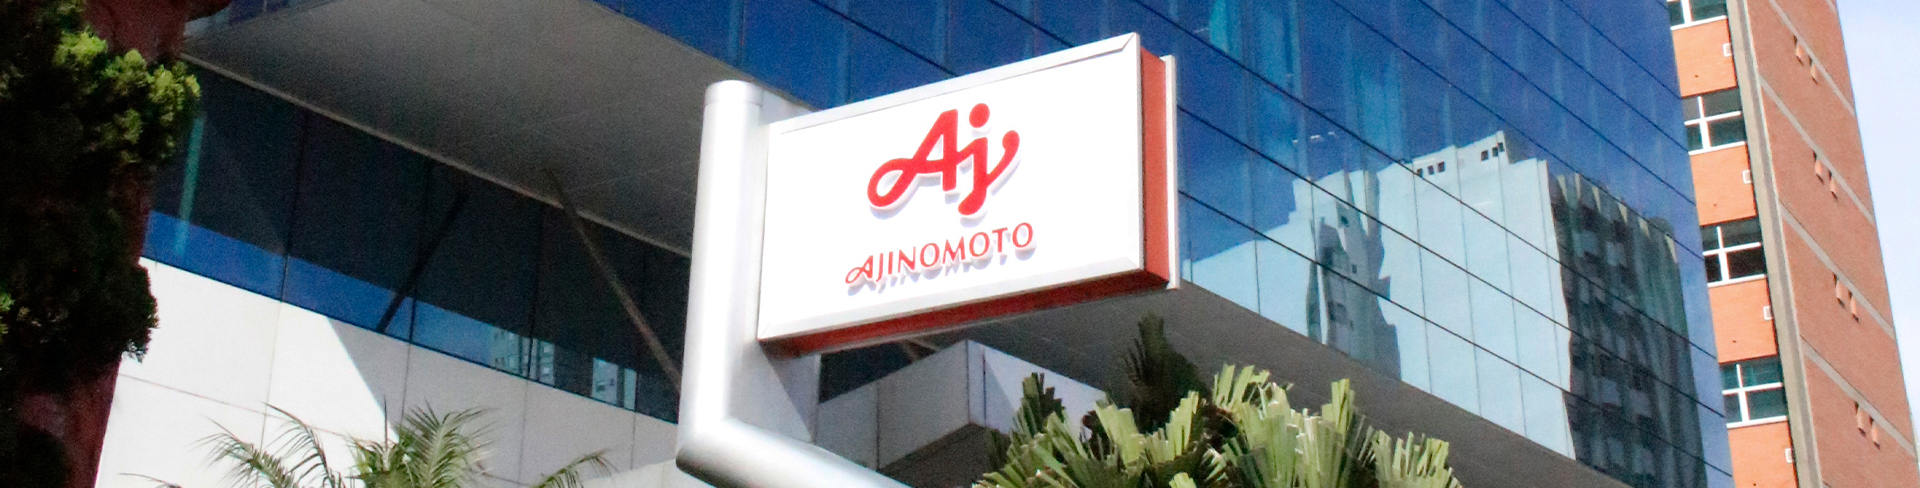 Placa da fachada com a logo Ajinomoto